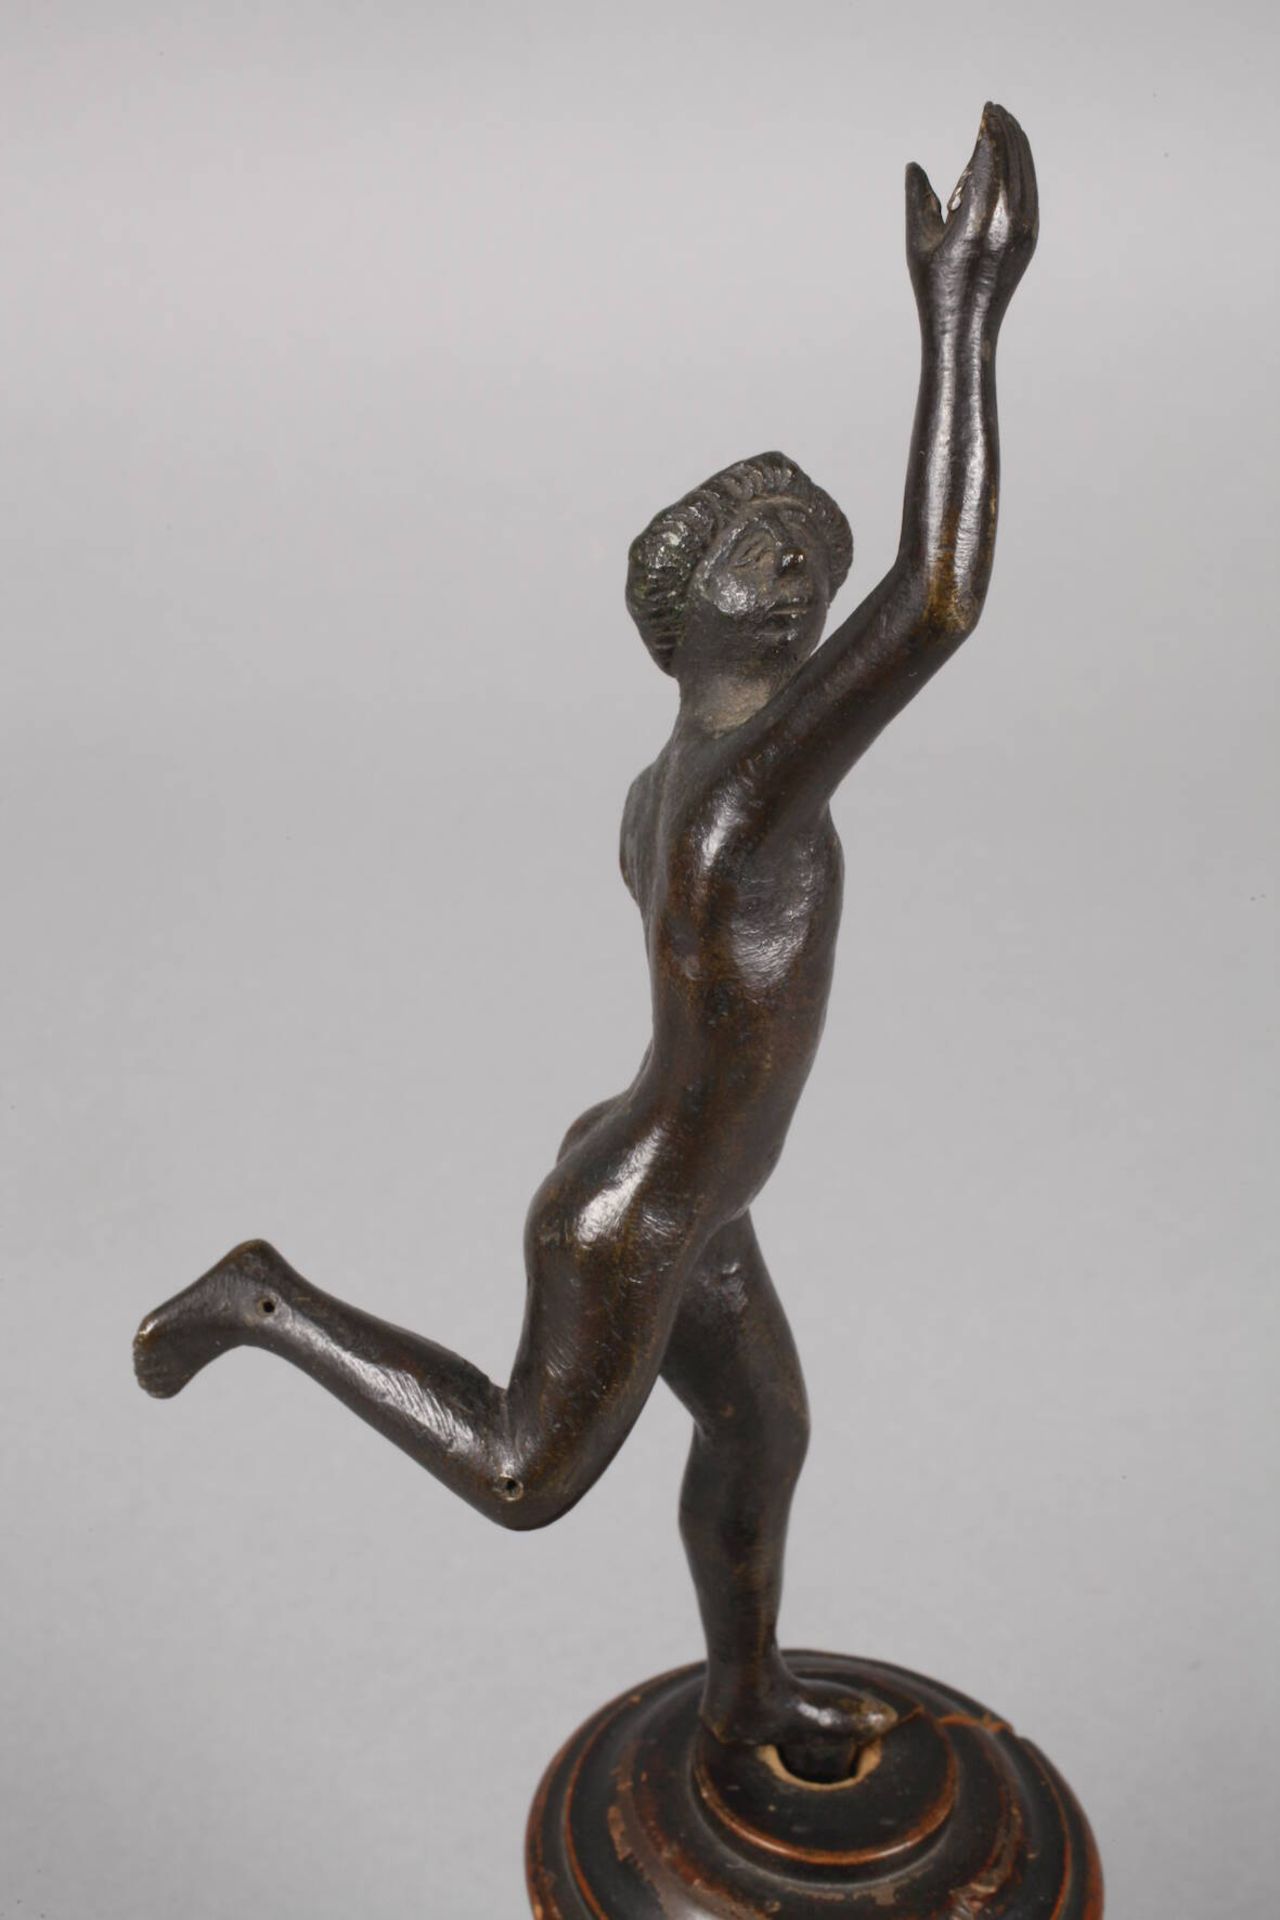 Hermes 17./18. Jh.unsigniert, Bronze dunkel patiniert, laufender Hermes als Akt, ein Arm fehlt - Bild 2 aus 6